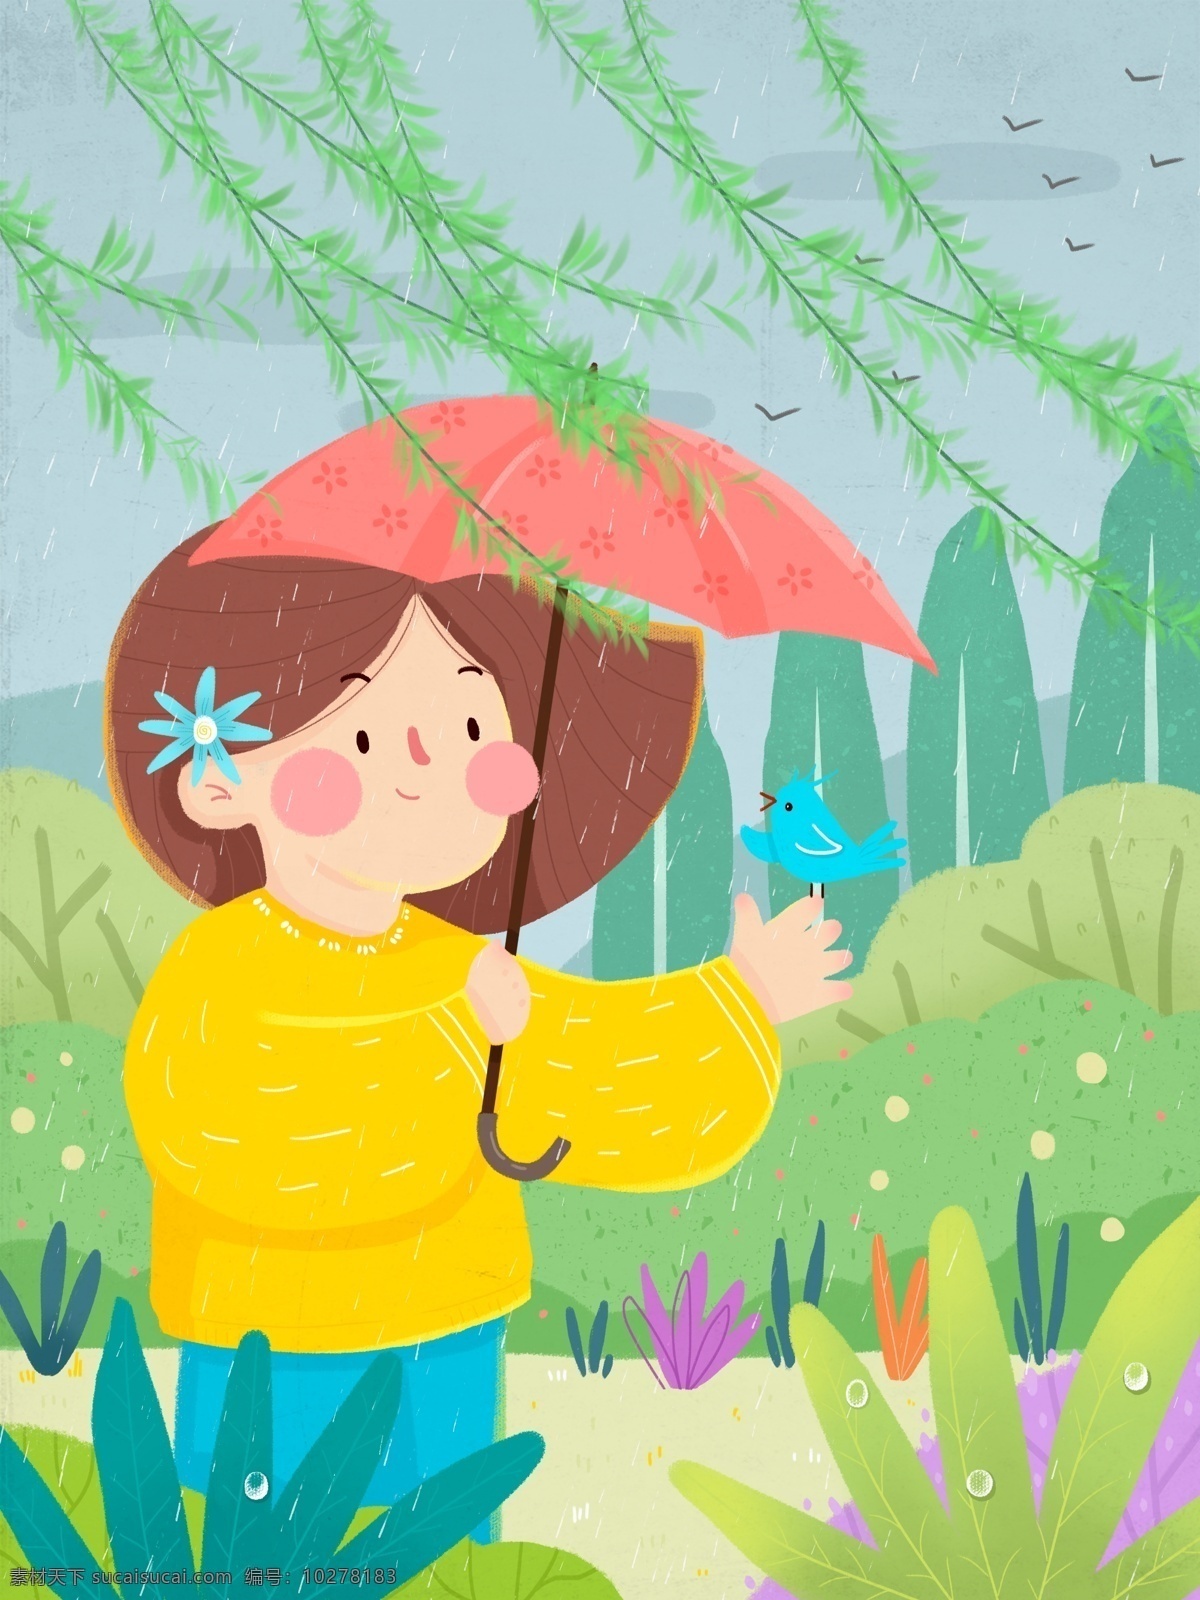 春天 下雨 万物 生长 谷雨 节气 女孩 小鸟 雨伞 植物 柳条